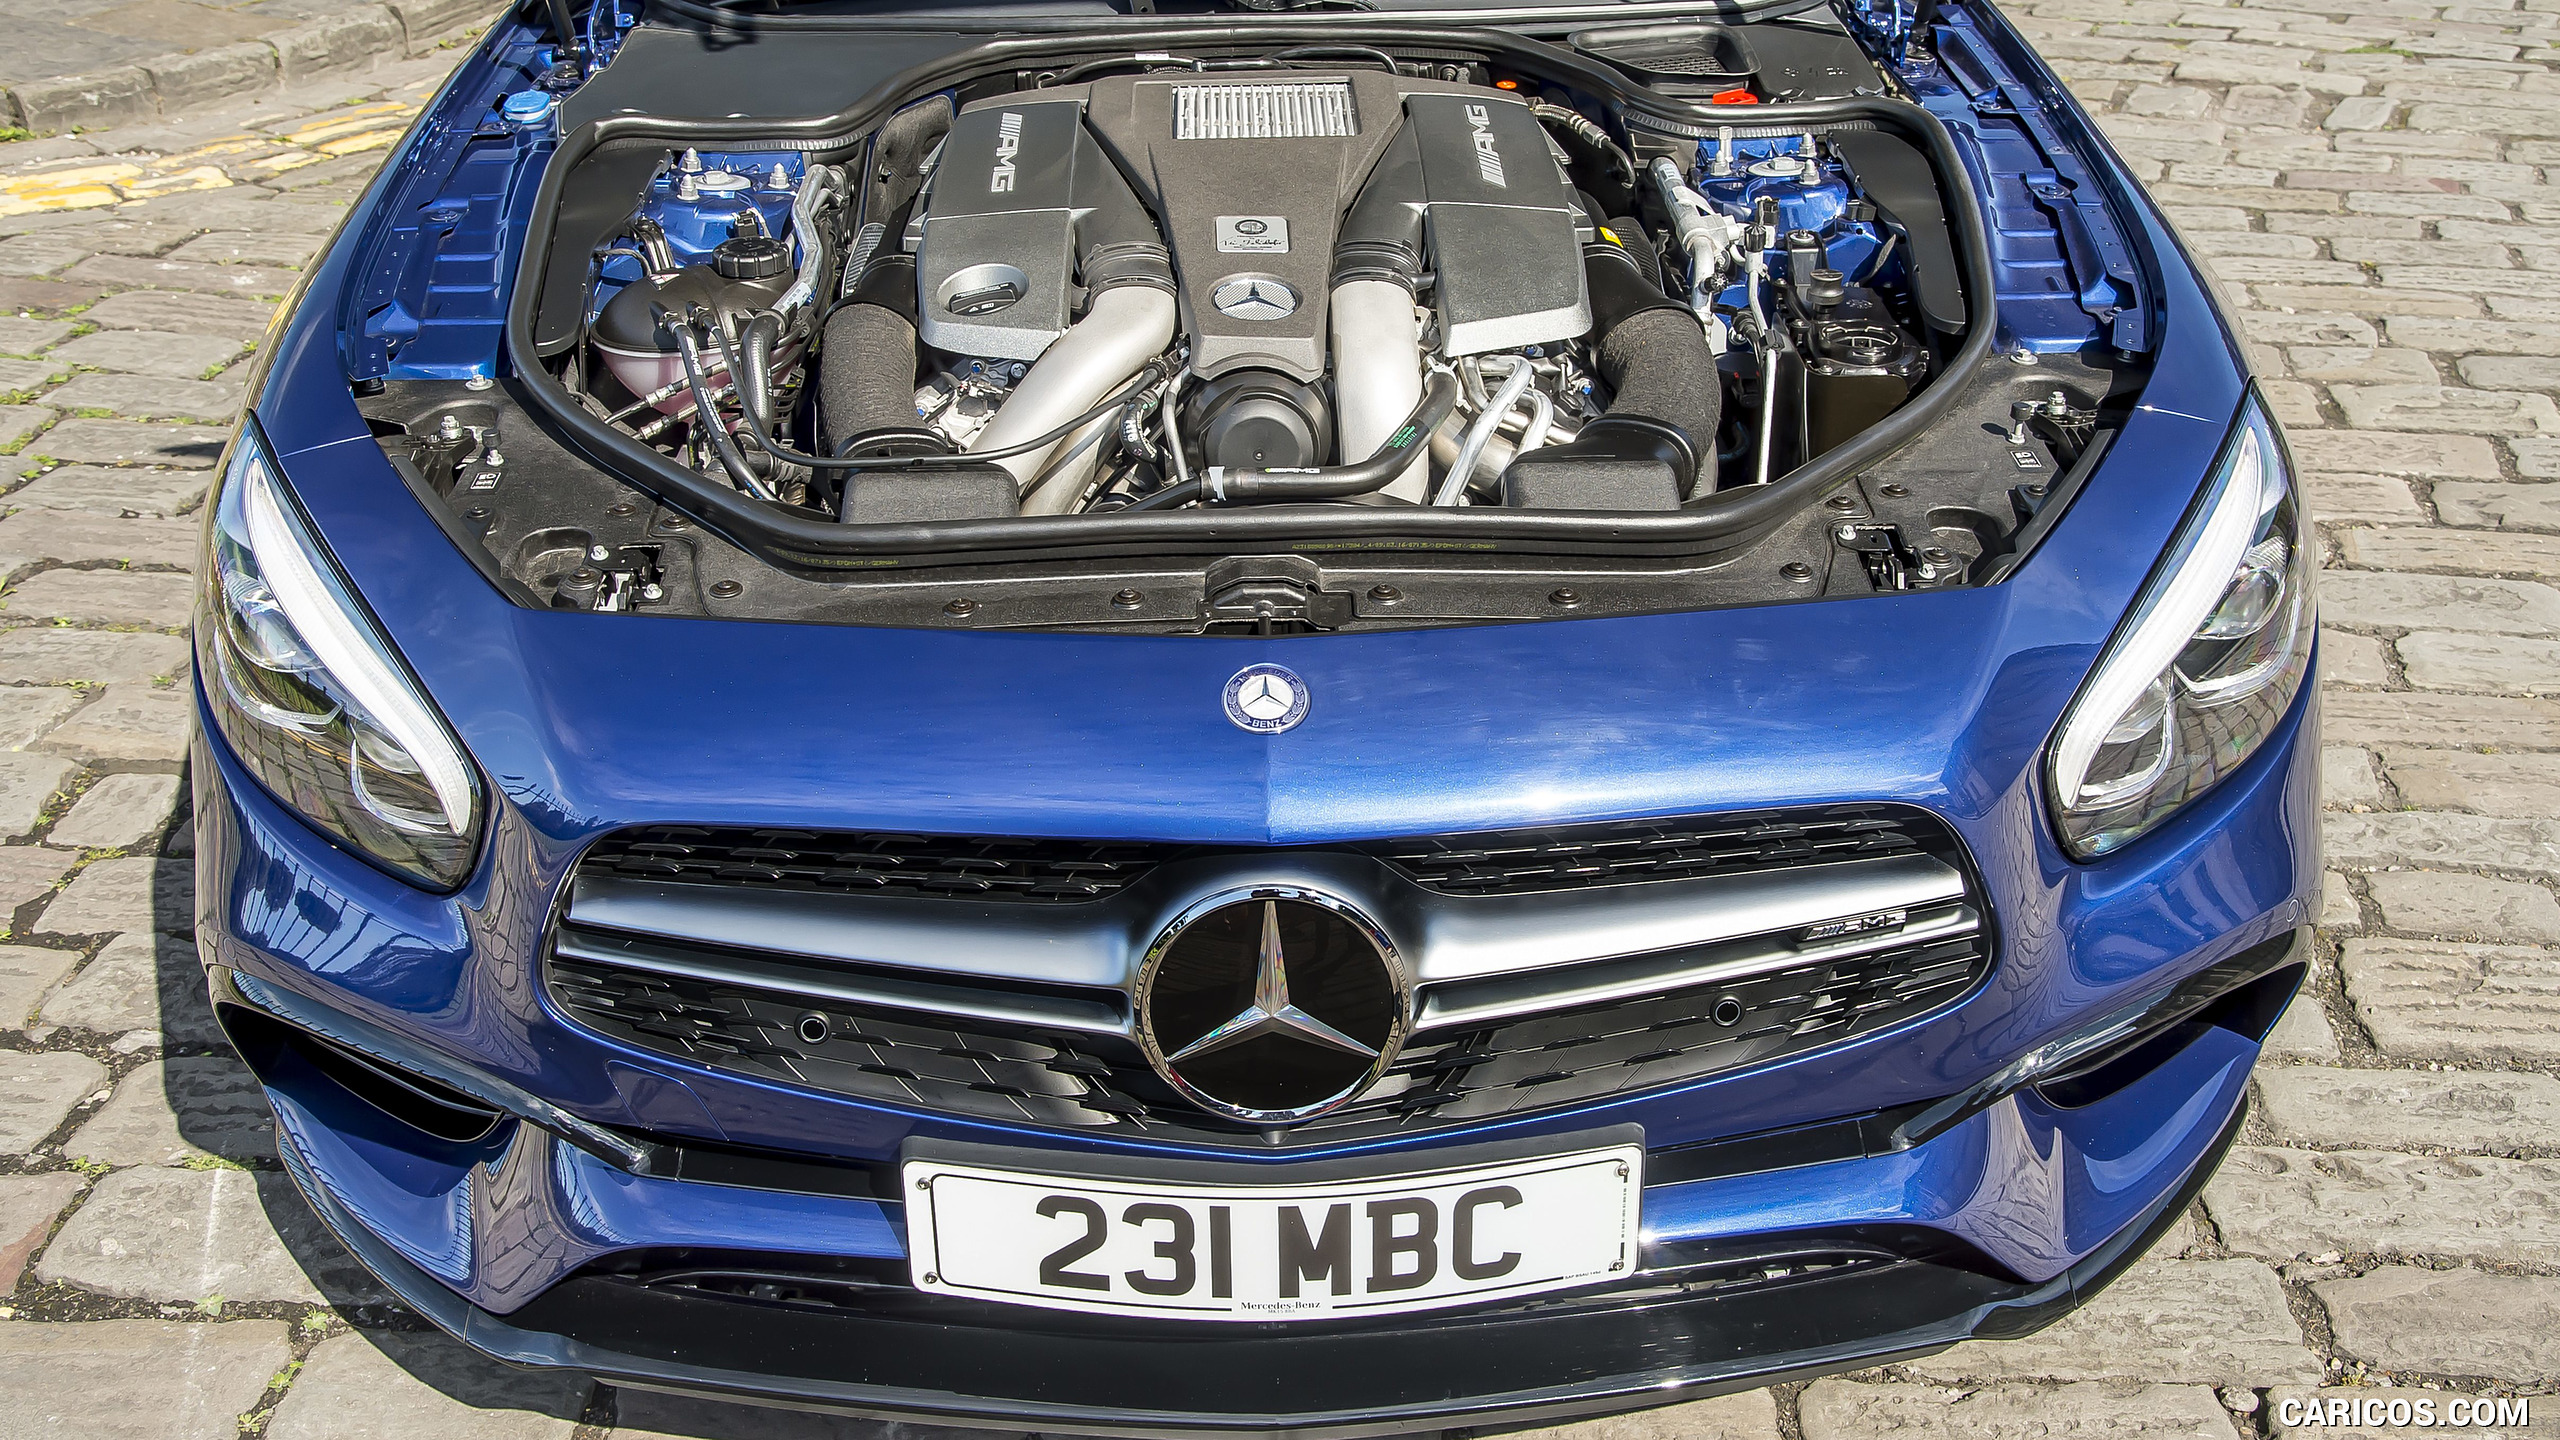 2017 Mercedes-AMG SL 63 (Color: Brilliant Blue; UK-Spec) - Engine, #87 of 88